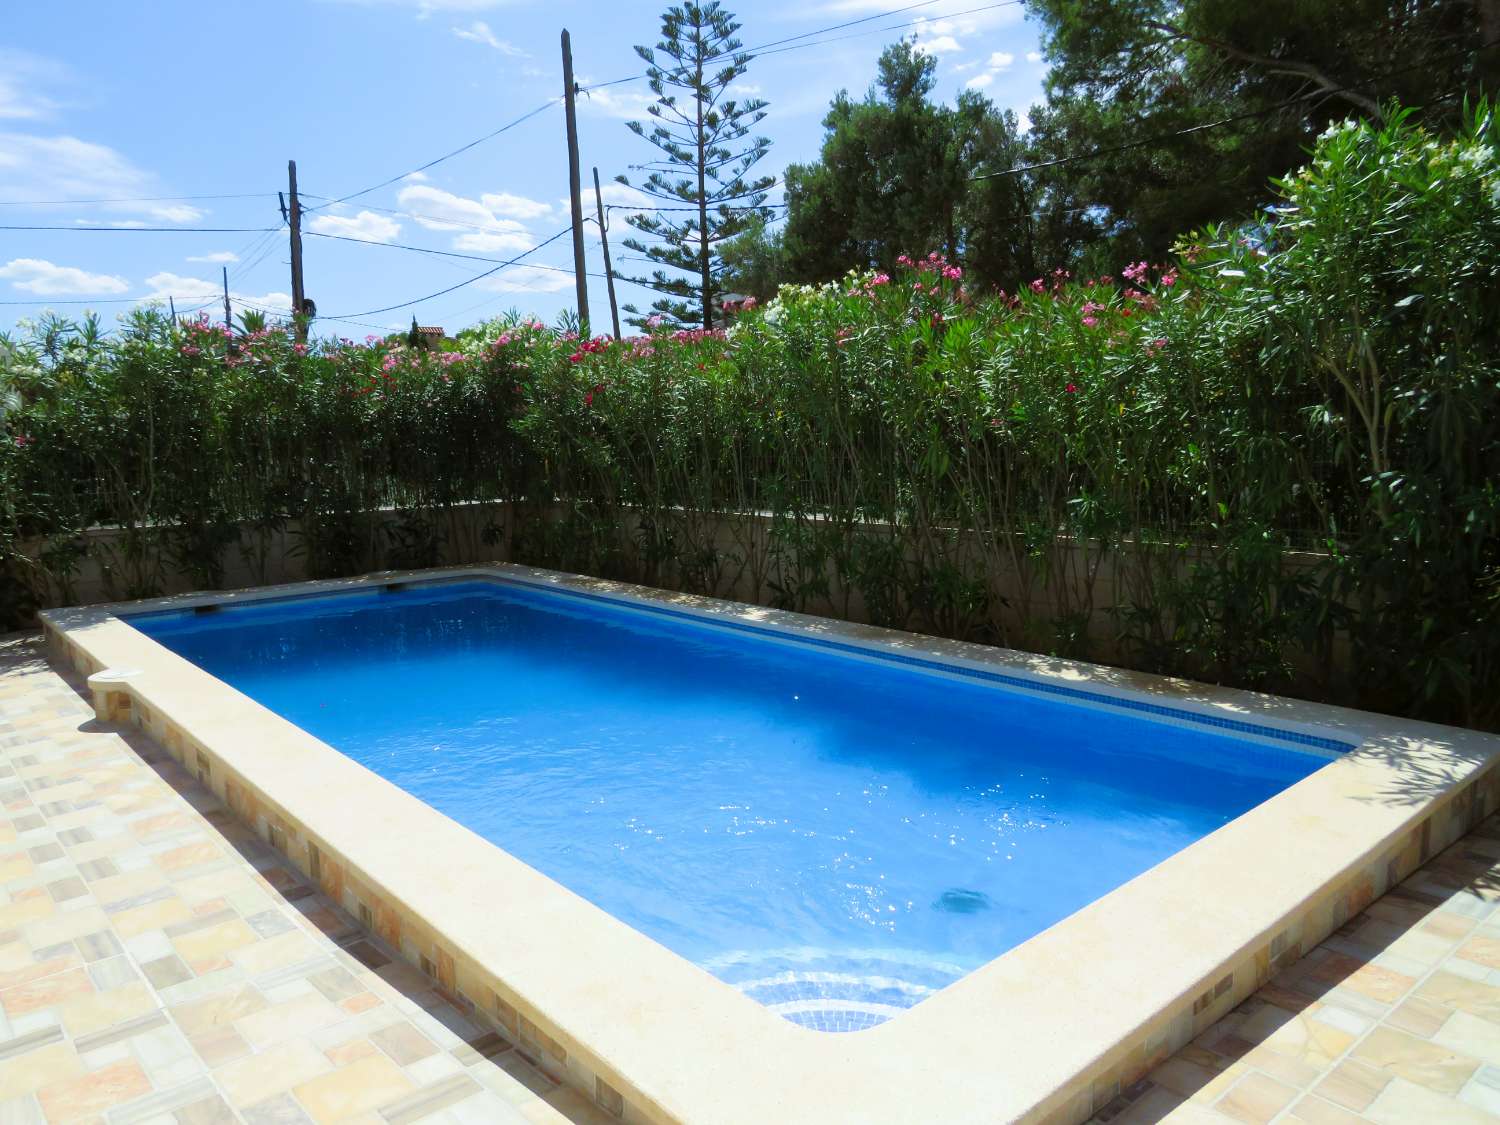 Casa moderna cerca de la playa en la bonita urbanización de Las Tres Calas con piscina privada y barbacoa.